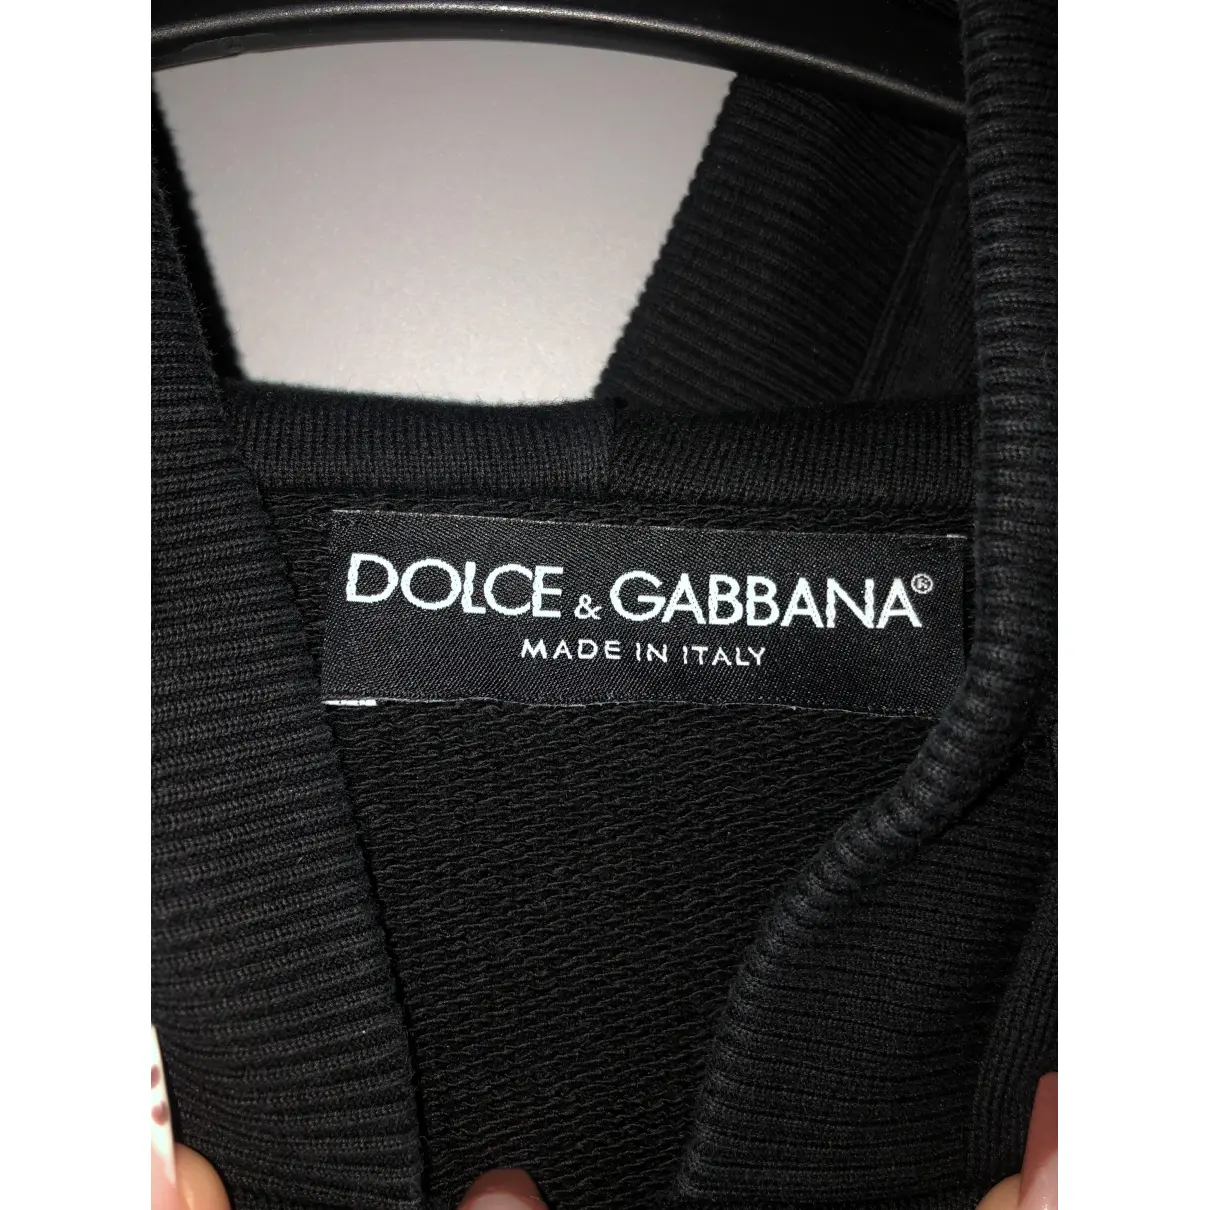 Buy Dolce & Gabbana Black Cotton Knitwear & Sweatshirt online